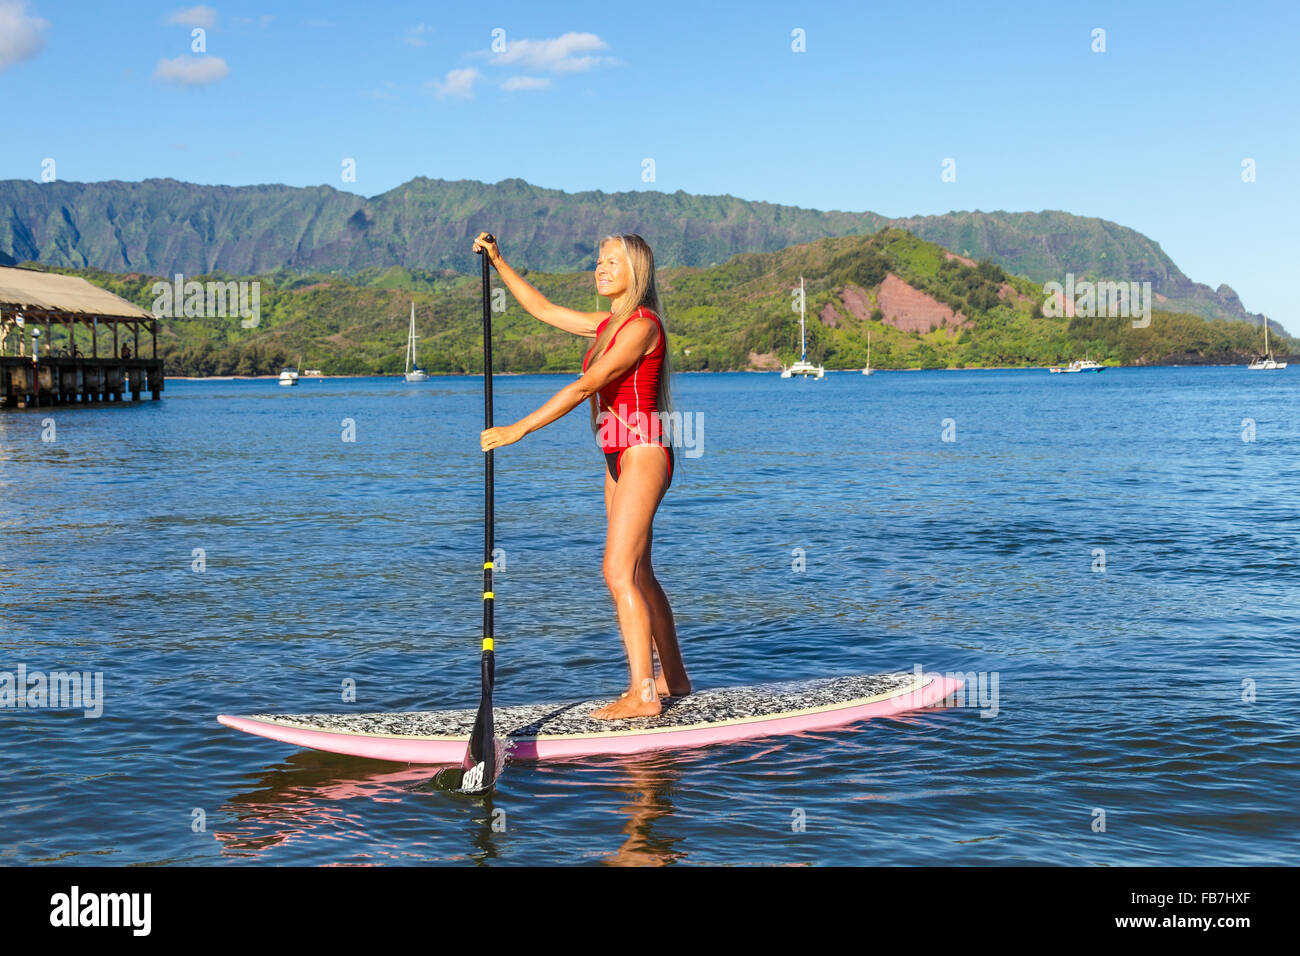 Frau auf Stand up Paddle Board in Hanalei Bay, mit Mt. Makana genannt Bali Hai und Hanalei Pier im Hintergrund Stockfoto